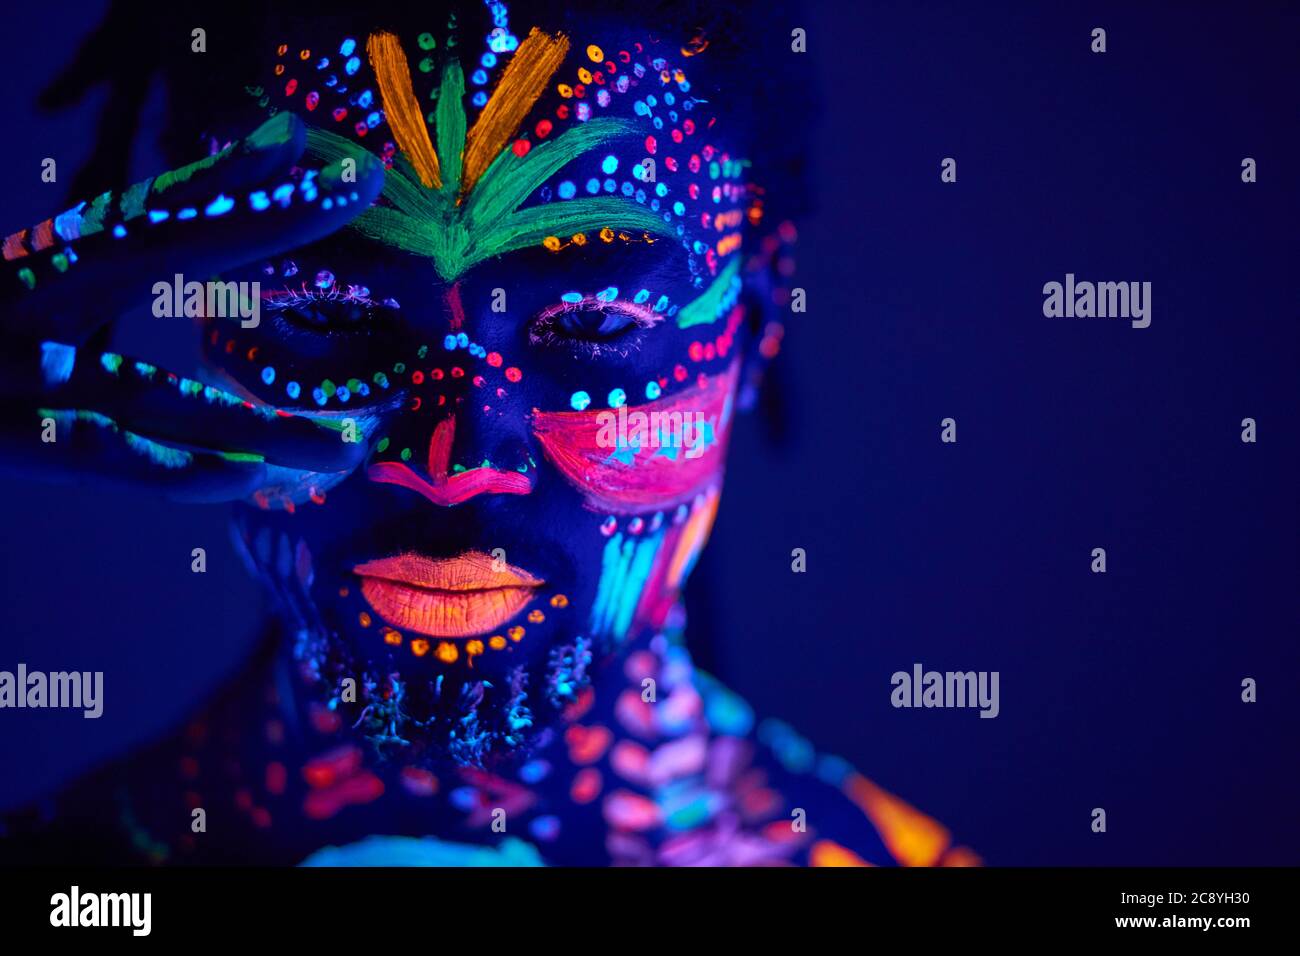 Ritratto di donna con trucco al neon, che ha fatto di vernice fluorescente  in luce ultravioletta Foto stock - Alamy